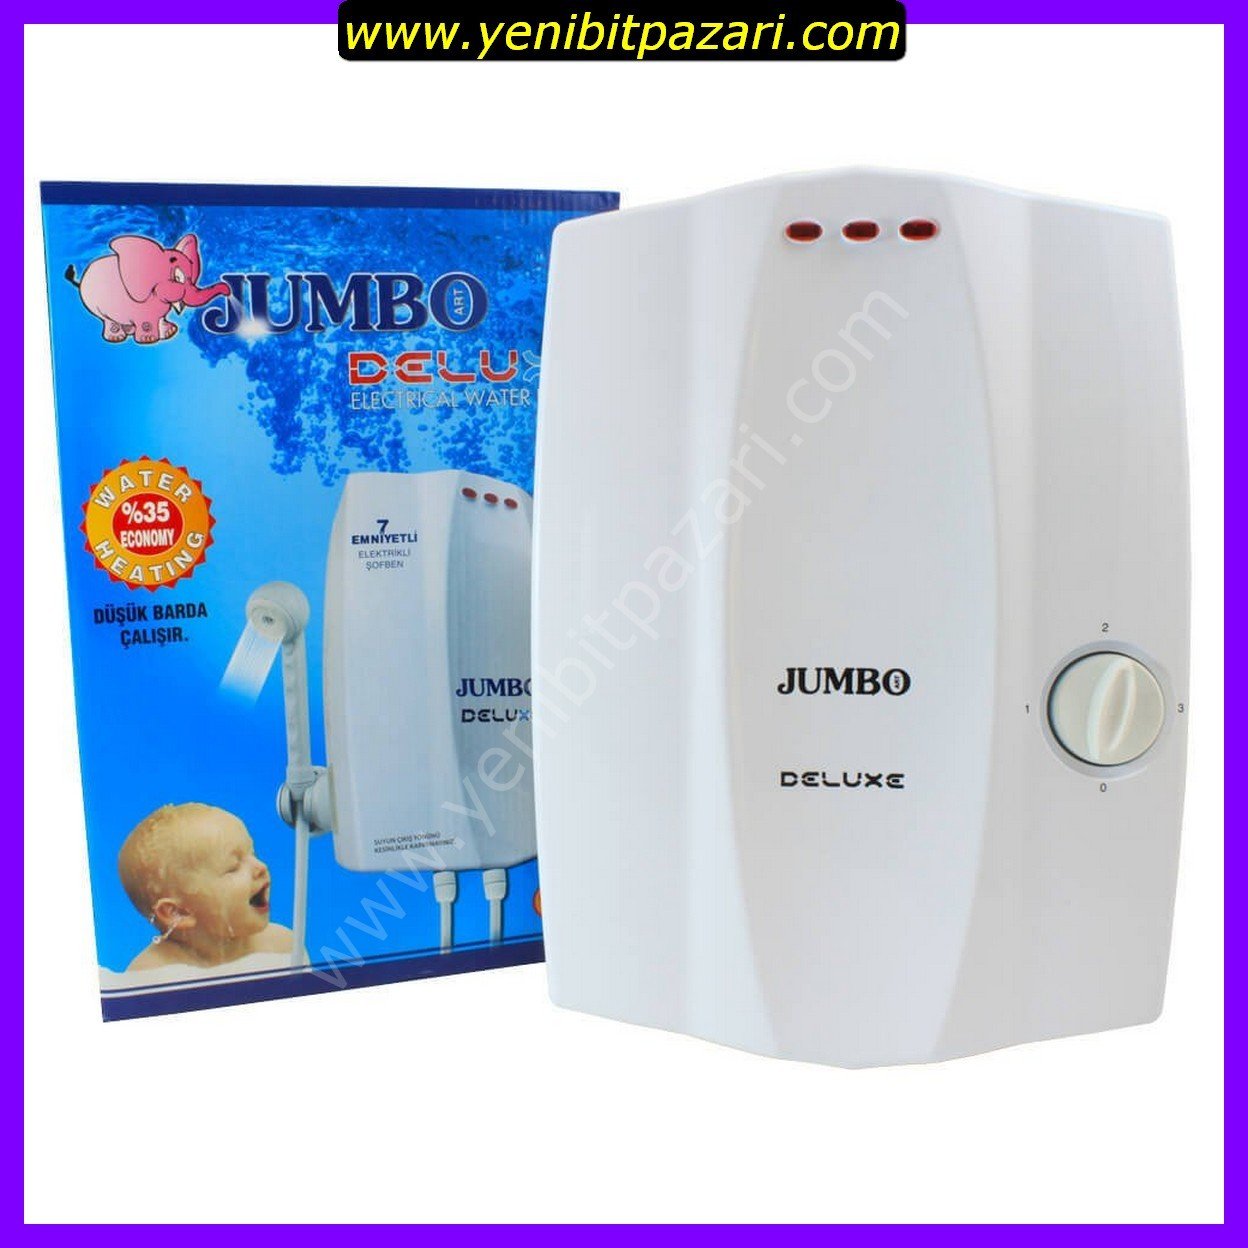 5 adet sıfır JUMBO DELUX 7500W elektrikli şohben şofben banyo ani su ısıtıcı düşük barda çalışma özelliği